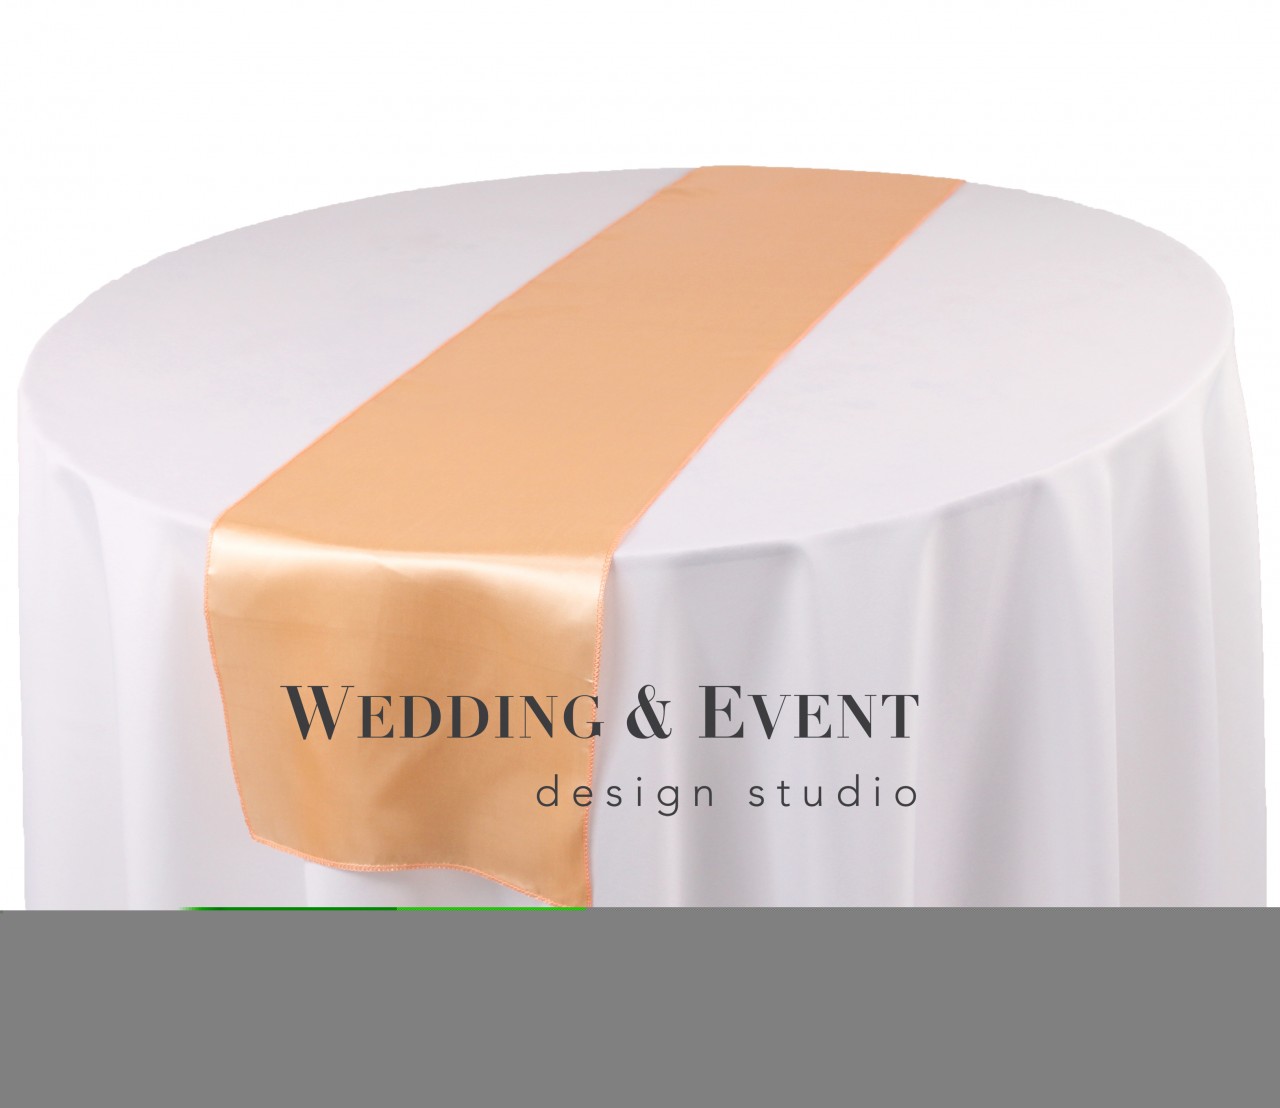 Das apricot & von Tischläufer, | Wedding weds4rent Event | - Studio Design Tischläufer Online-Mietportal